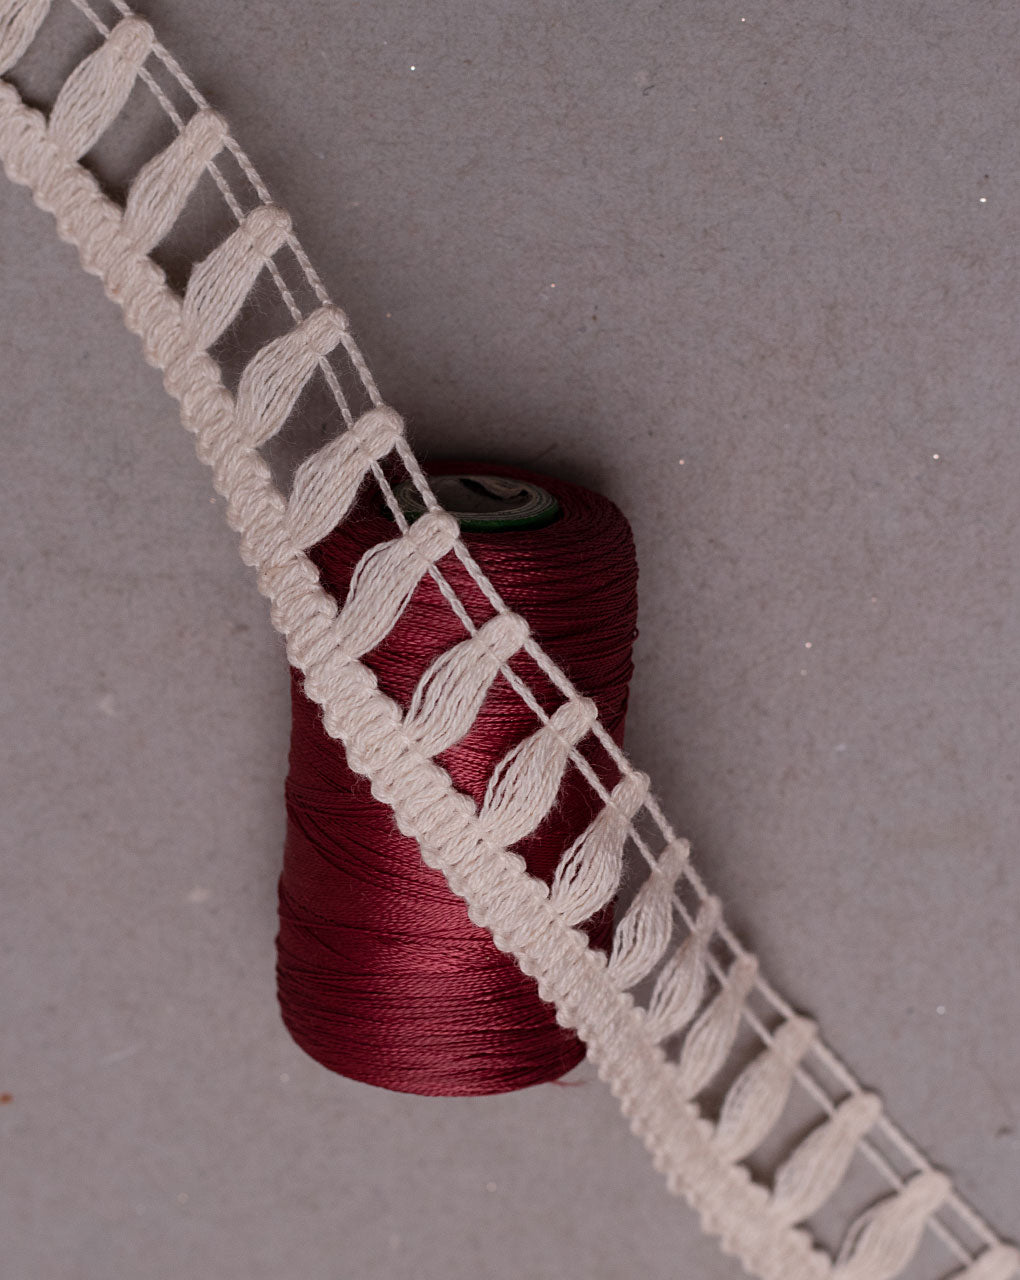 Dyeable Crochet  Cotton Lace - Fabriclore.com